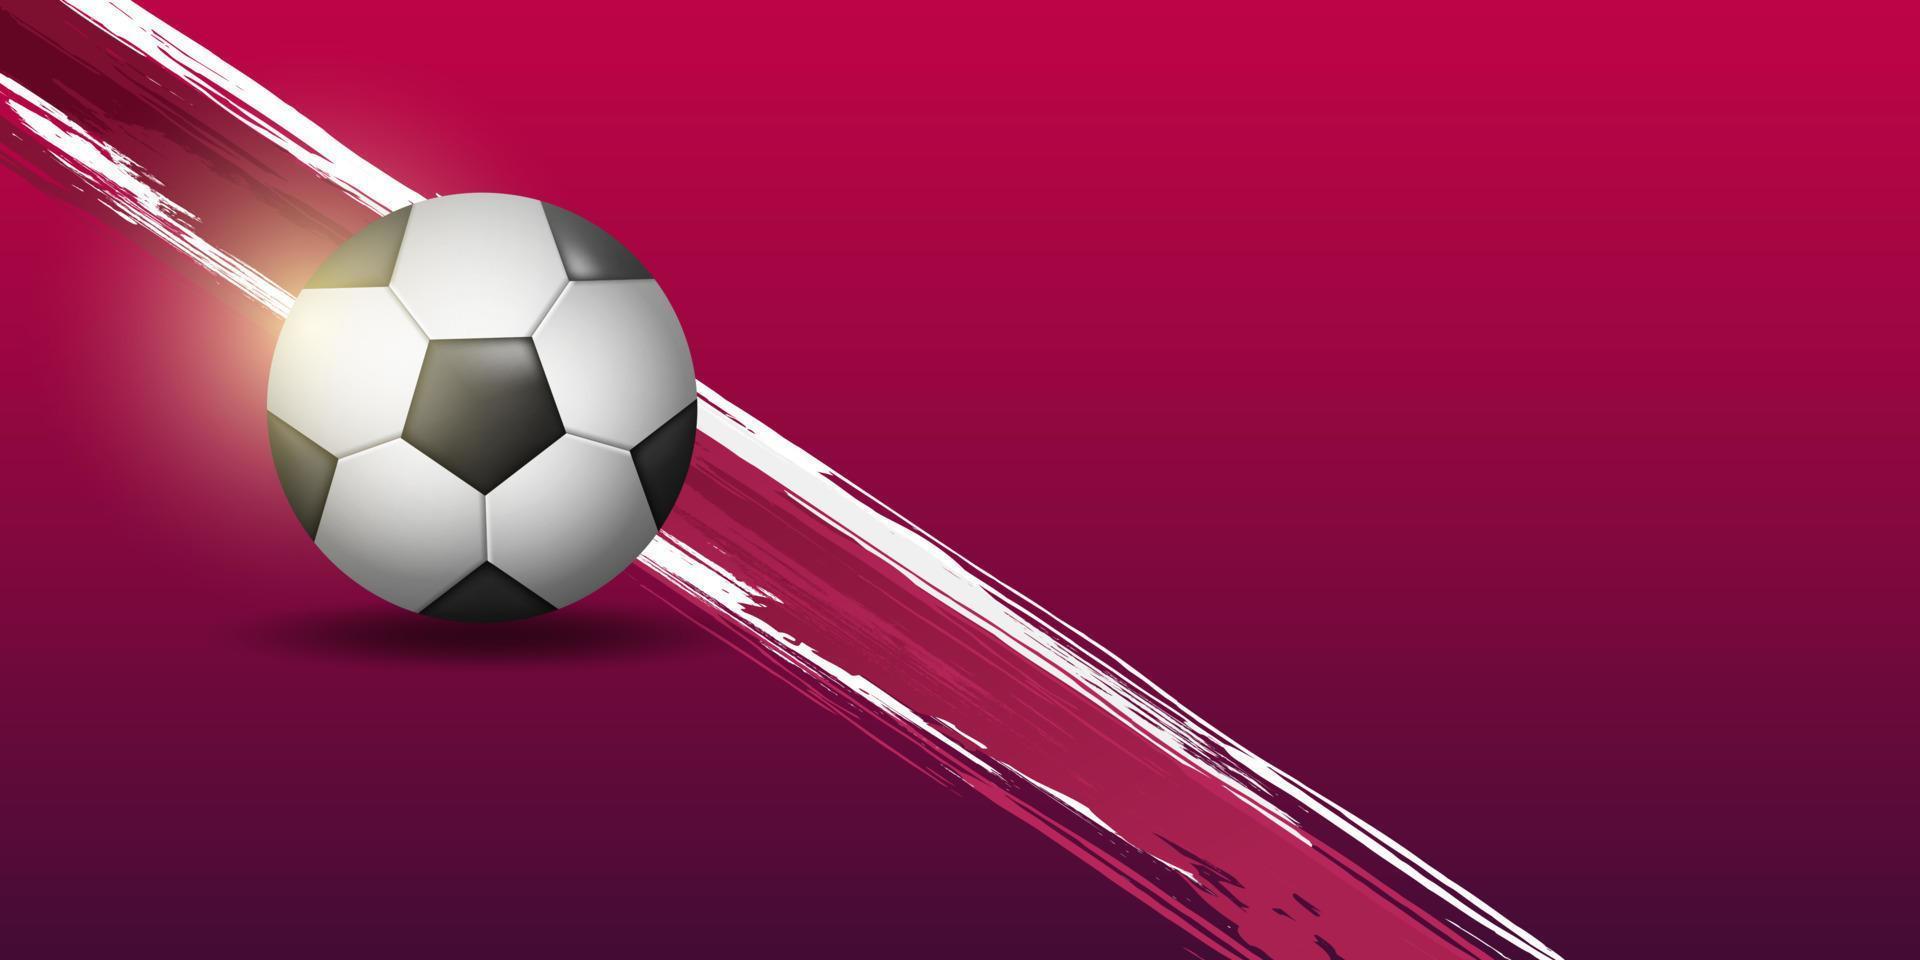 vector de copa mundial 2022, copa mundial fifa o copa mundial qatar. fondo de la copa del mundo qatar con bola 3d combinada con fondo grunge.